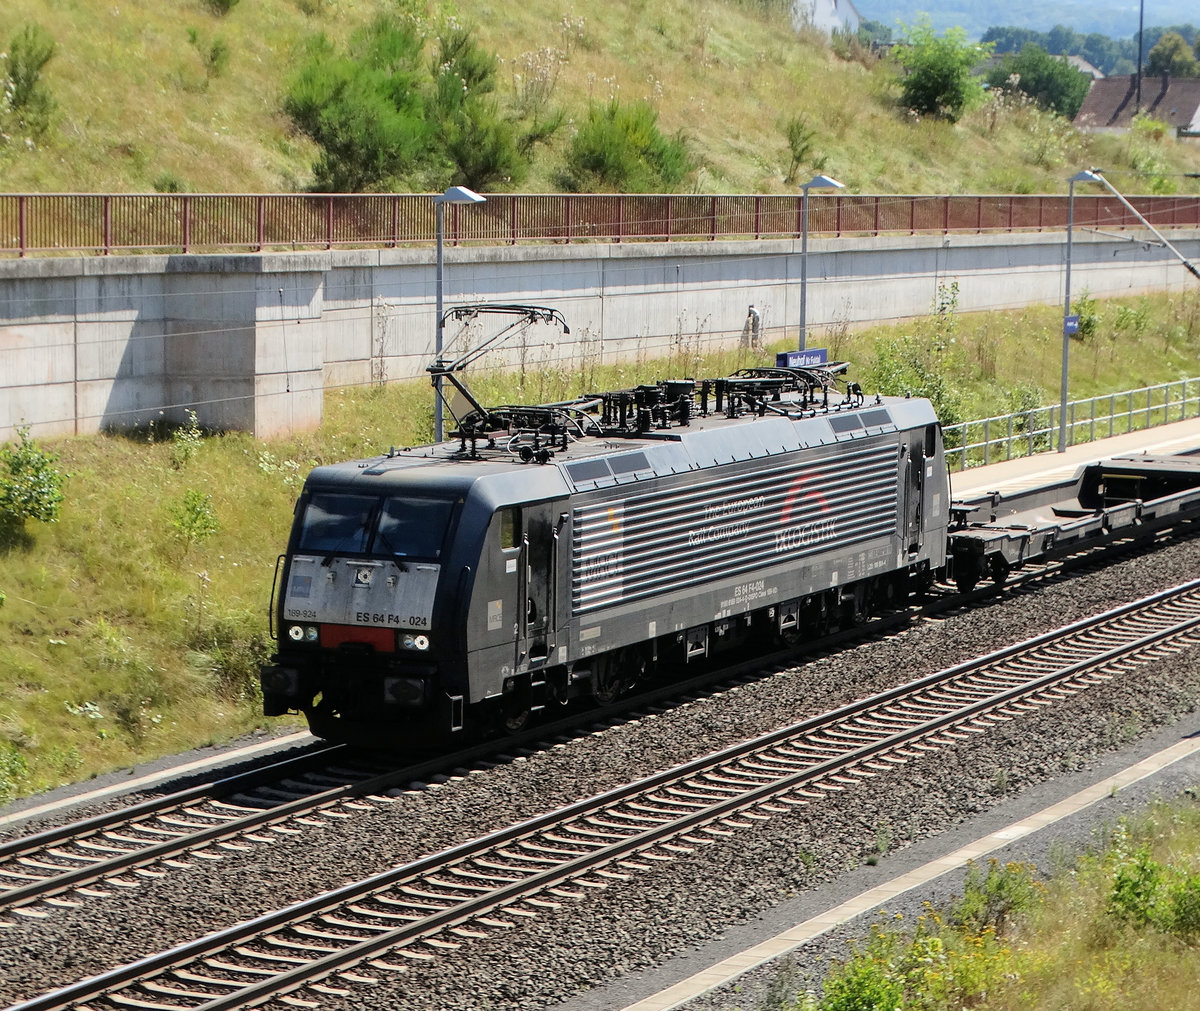 MRCE/Dispolok TX Logistic Siemens ES 64 F4-024 (189 924) am 18.08.16 bei Neuhof (Kreis Fulda) auf der KBS615